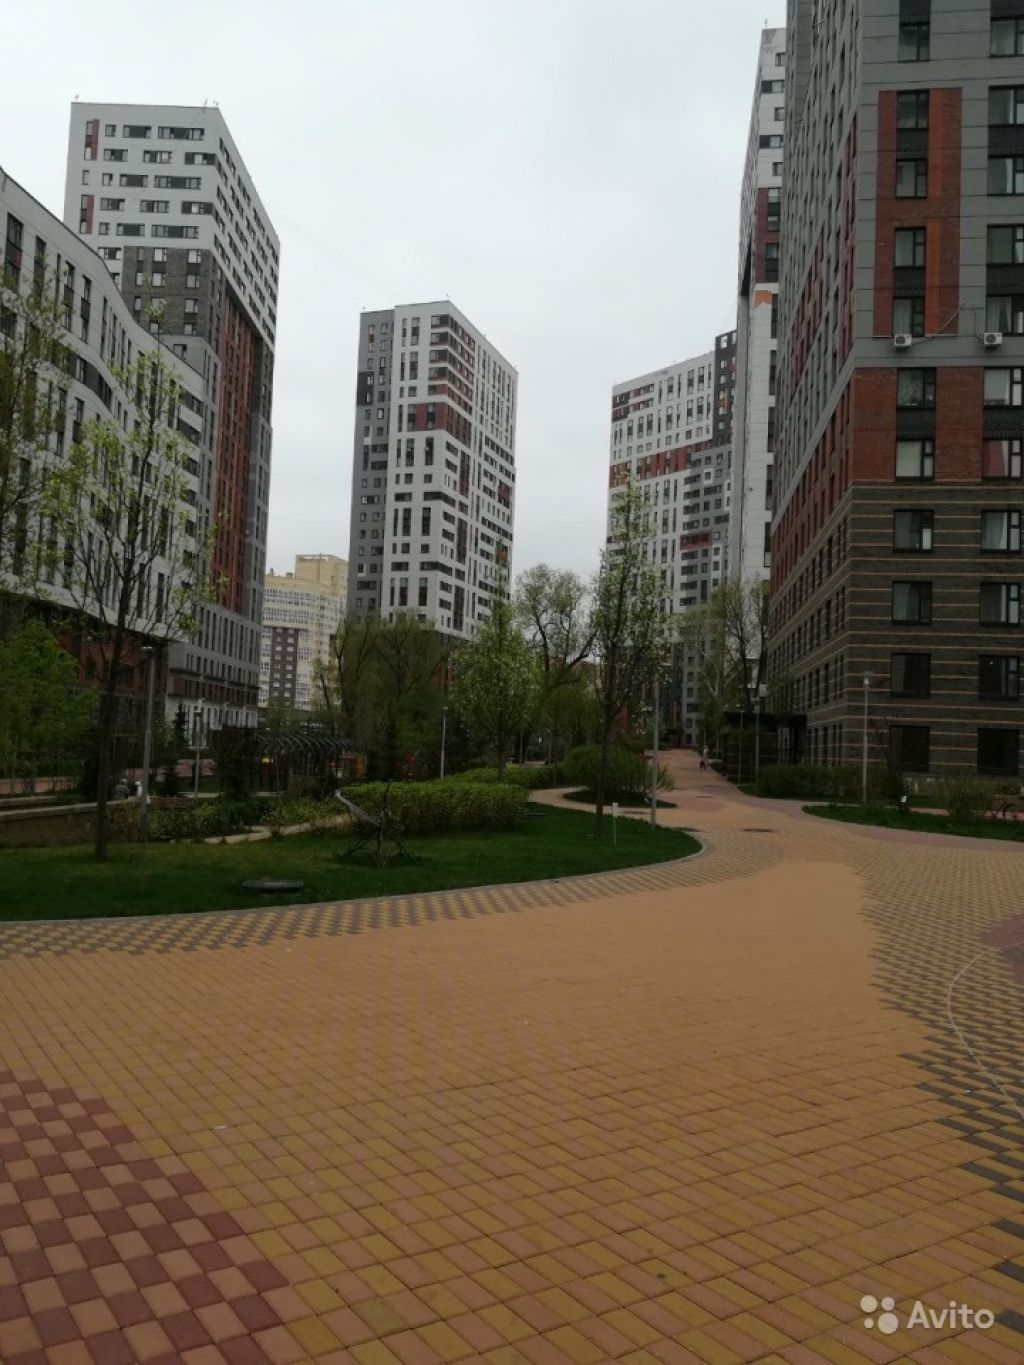 Продам квартиру 1-к квартира 31 м² на 7 этаже 22-этажного монолитного дома в Москве. Фото 1